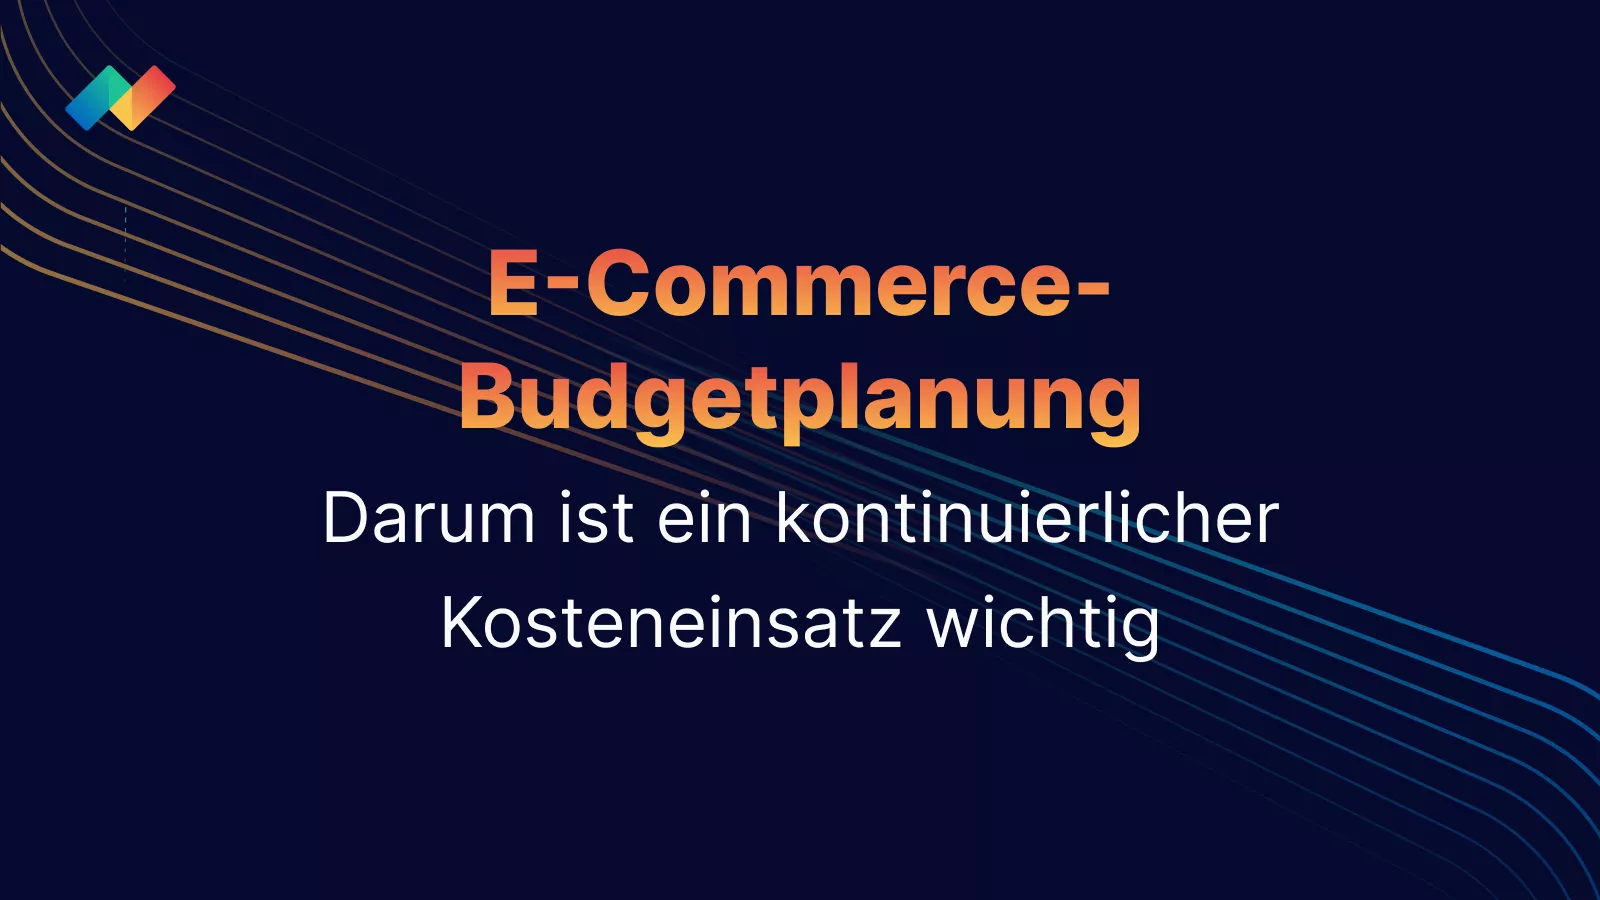 E-Commerce-Budgetplanung: Budgetieren Sie mindestens 15 Prozent des Jahresumsatzes